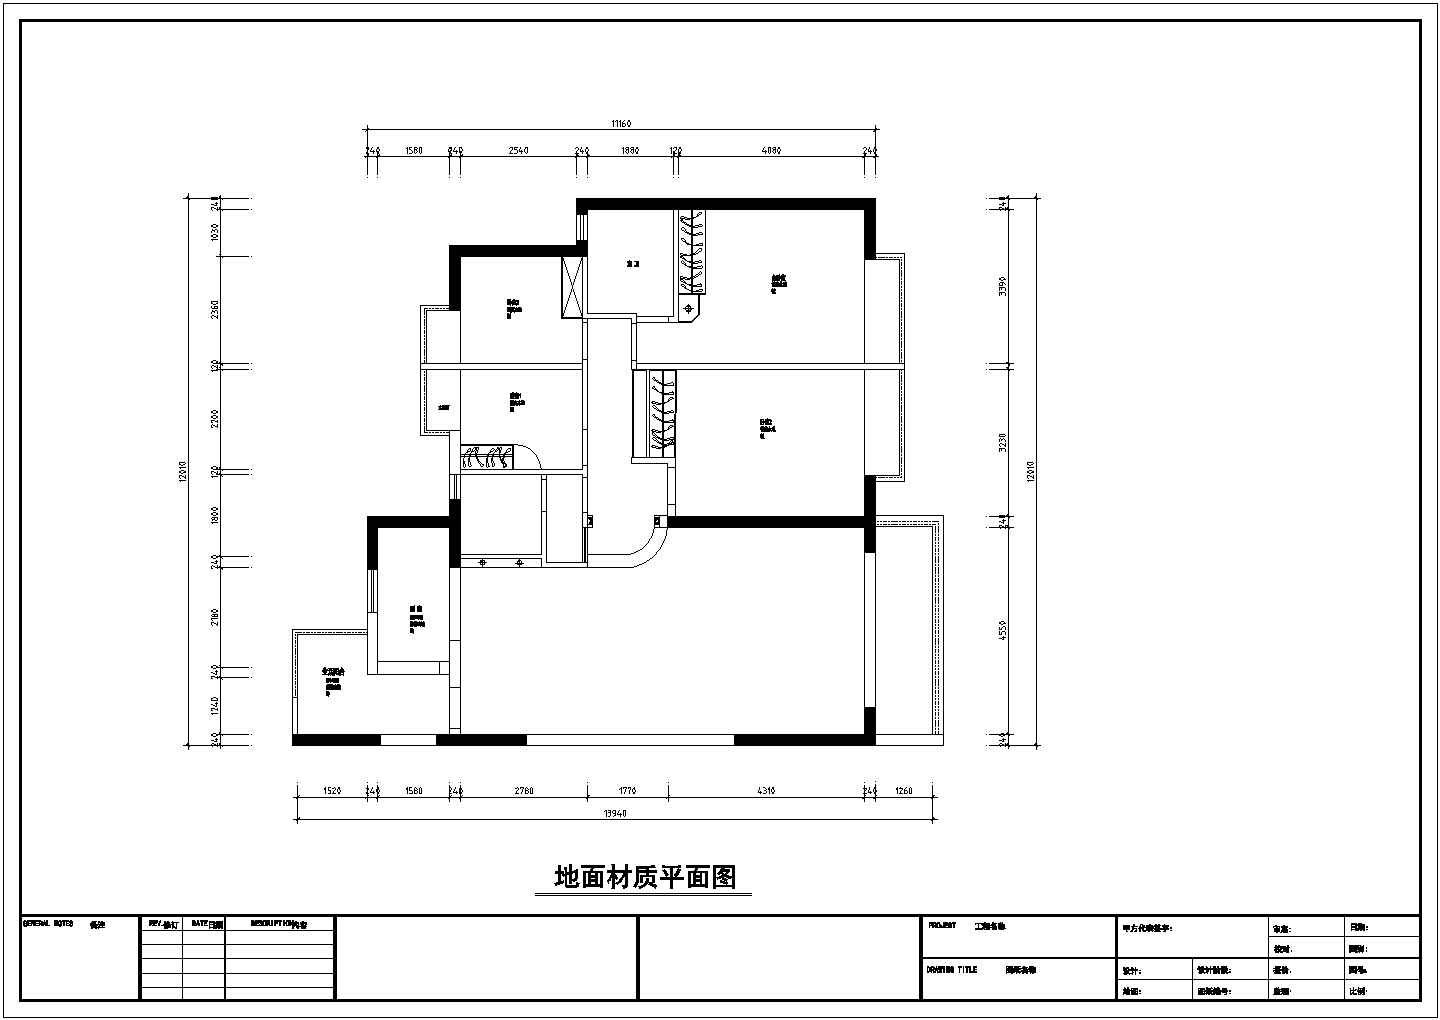 4室2厅欧式风格住宅装修施工图